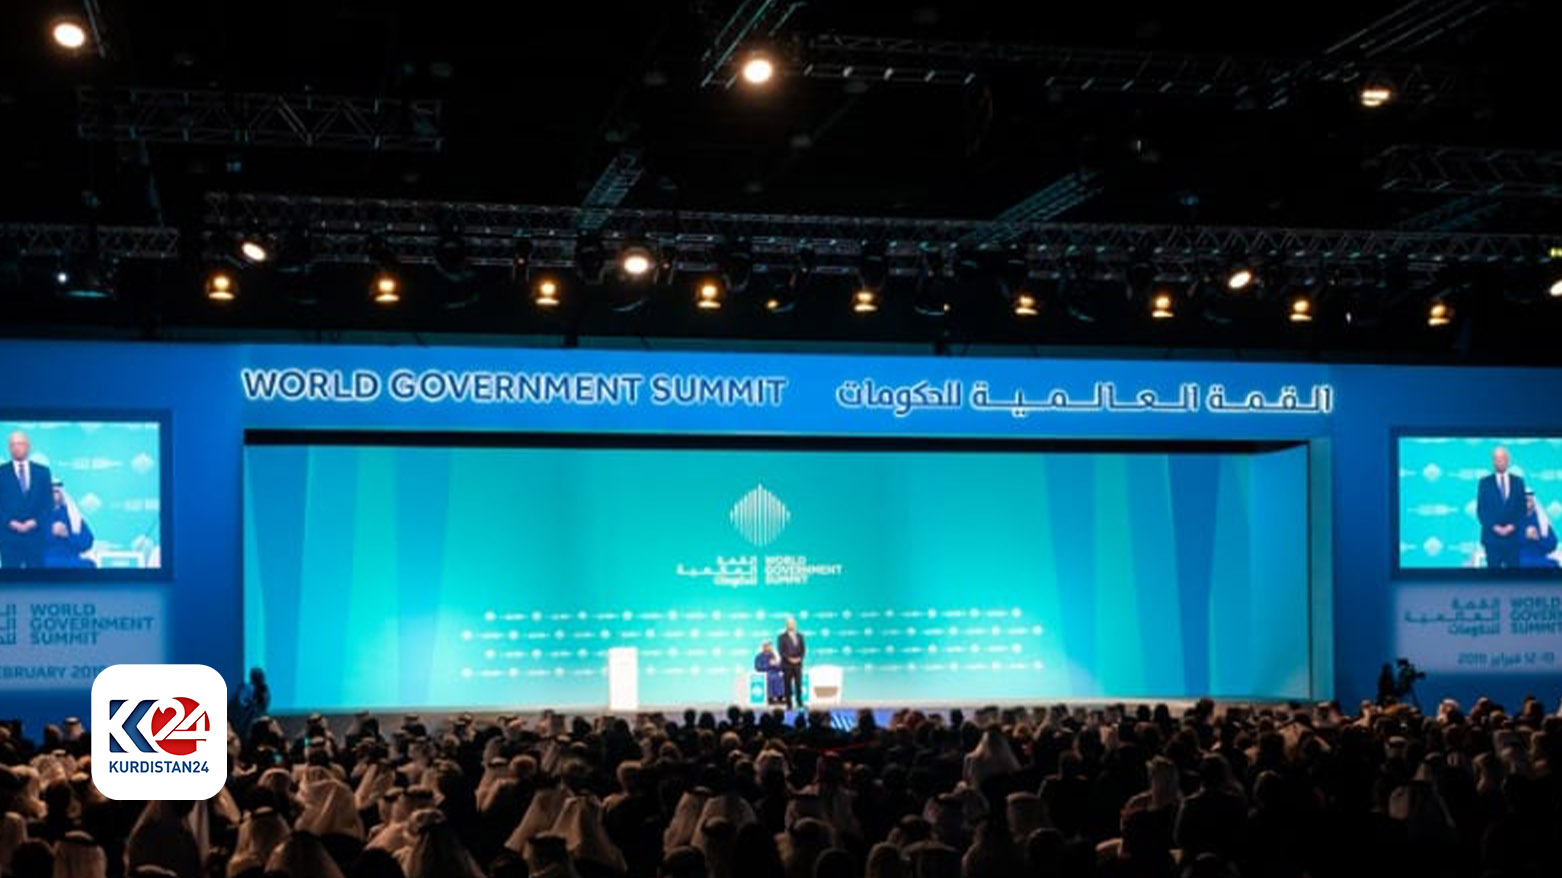 موفد كوردستان24: رئيس حكومة كوردستان سيلقي كلمة خلال القمة العالمية للحكومات في دبي